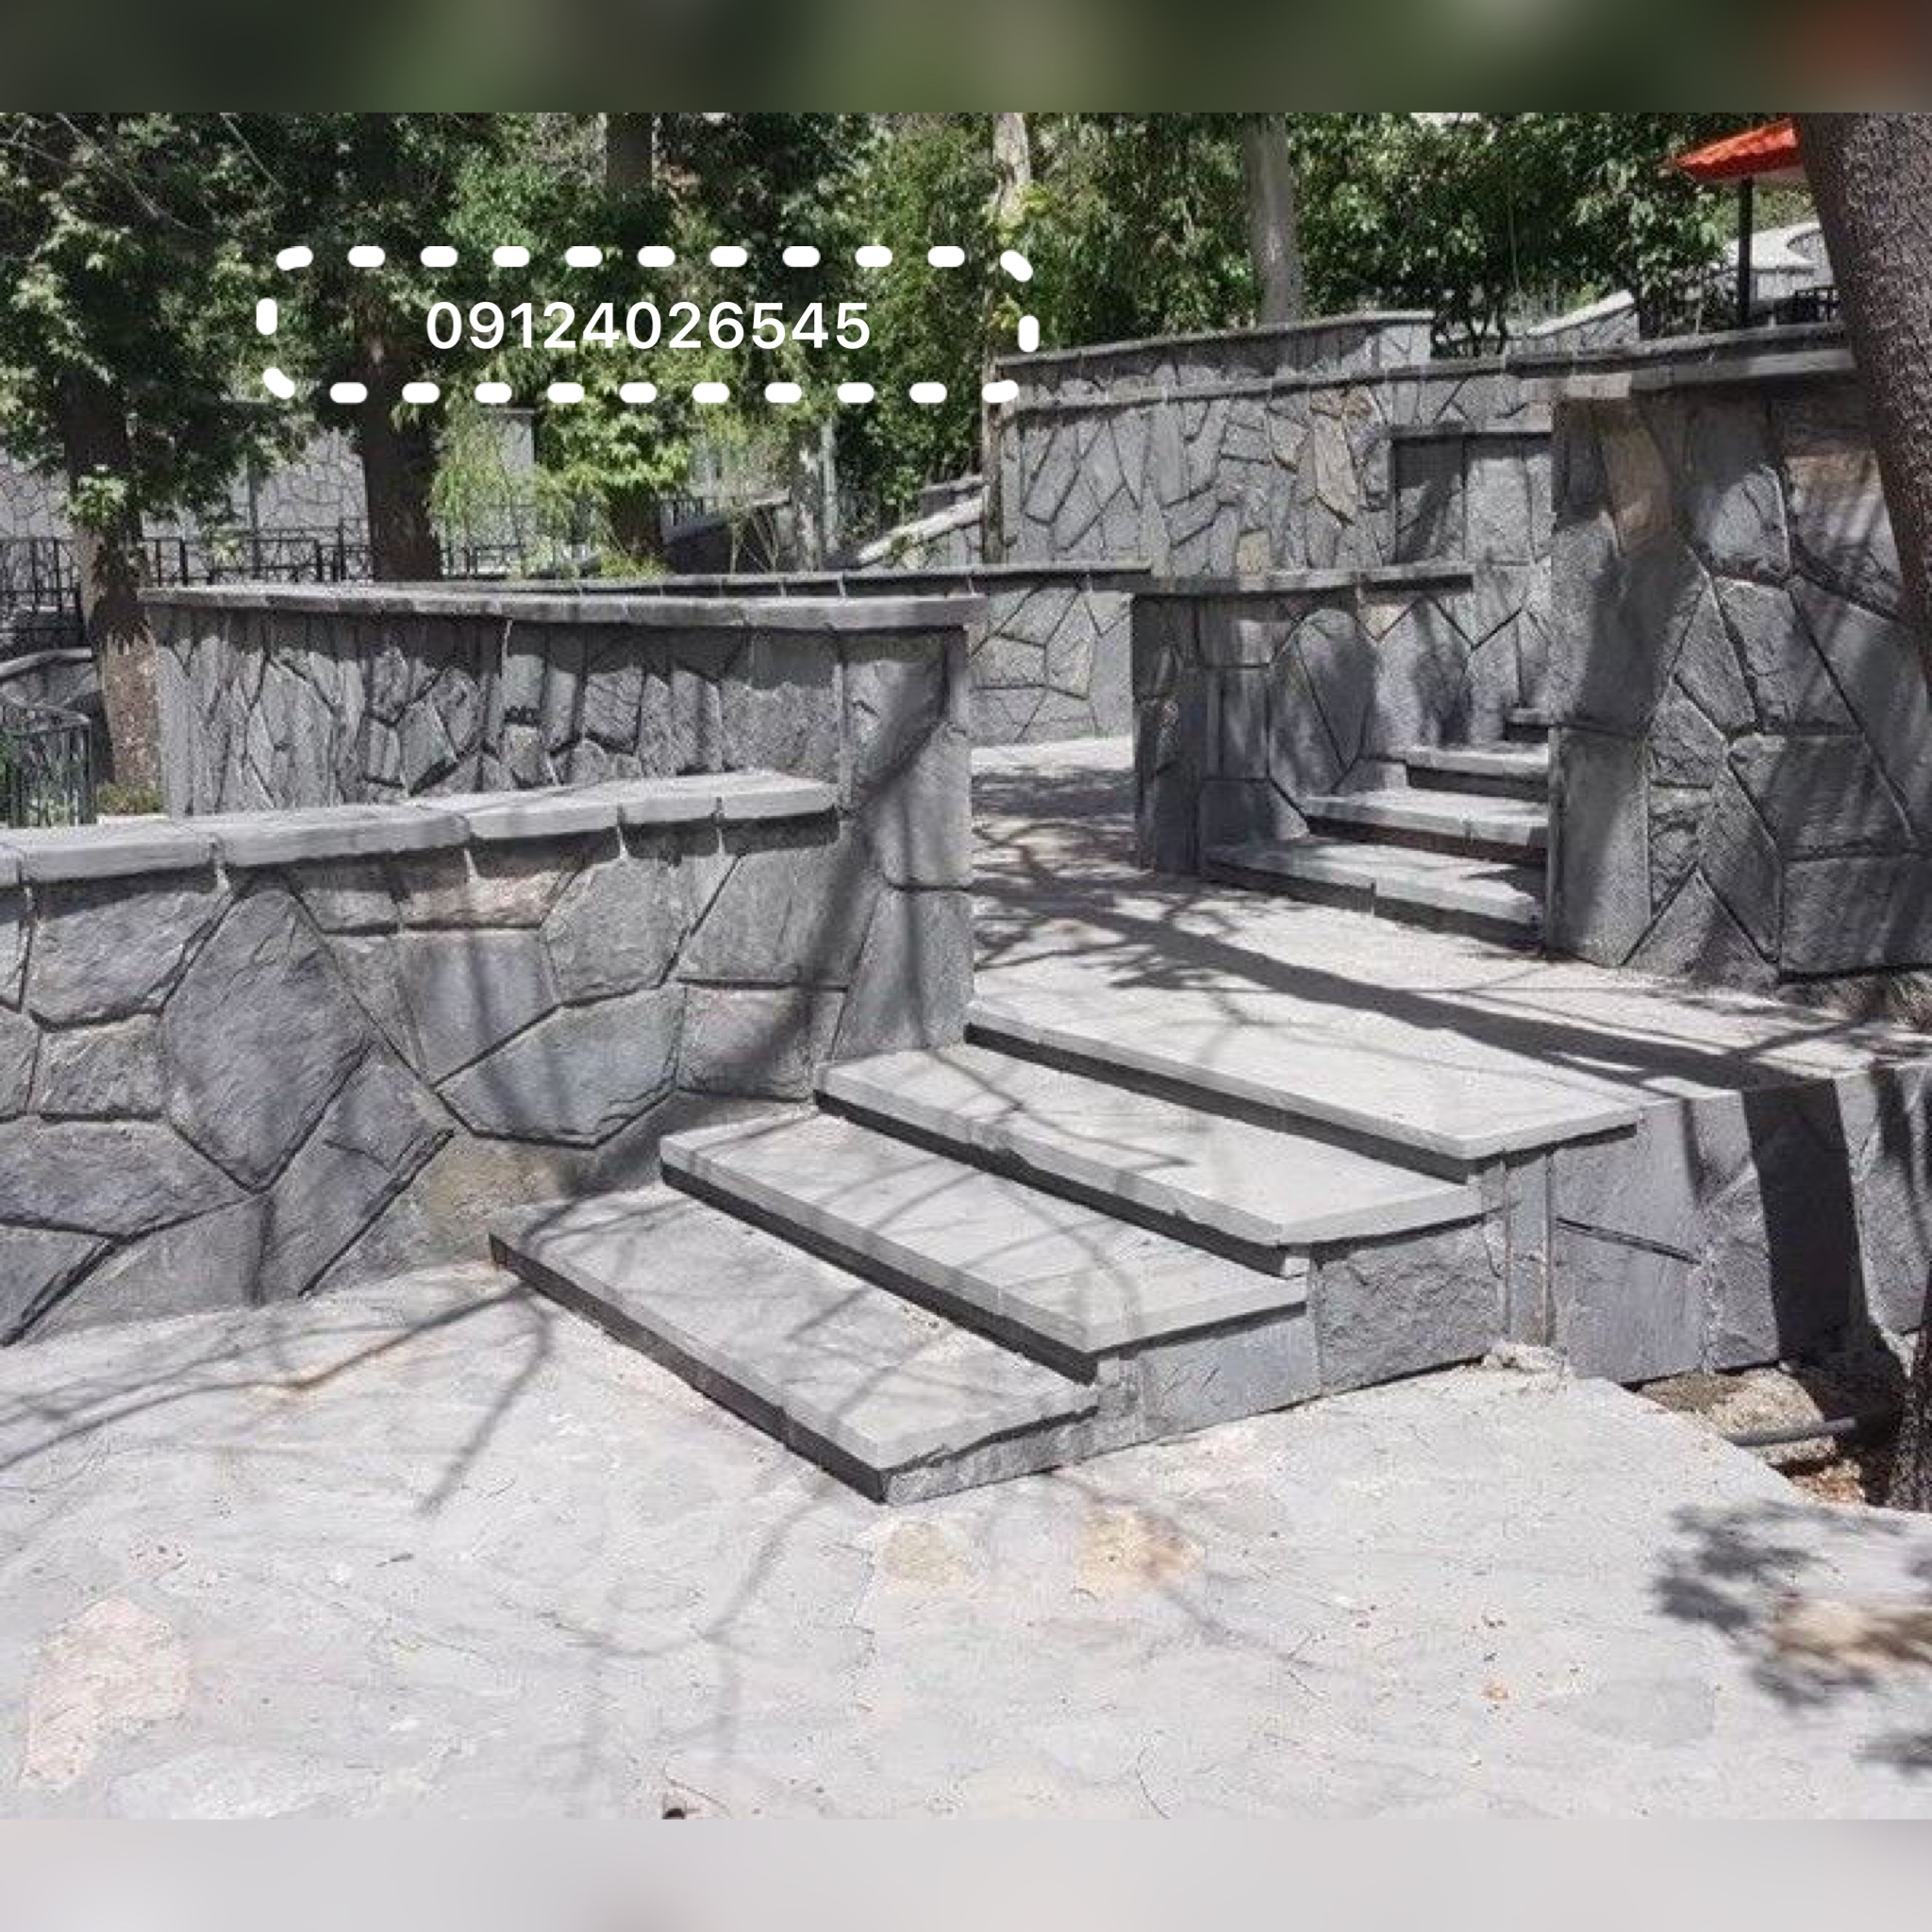 نصب سنگ مالون و نصب سنگ لاشه اجرای سنگ لاشه برای محوطه سازی باغ ویلا برای کف نما دیوار باغچه پله درپوش 